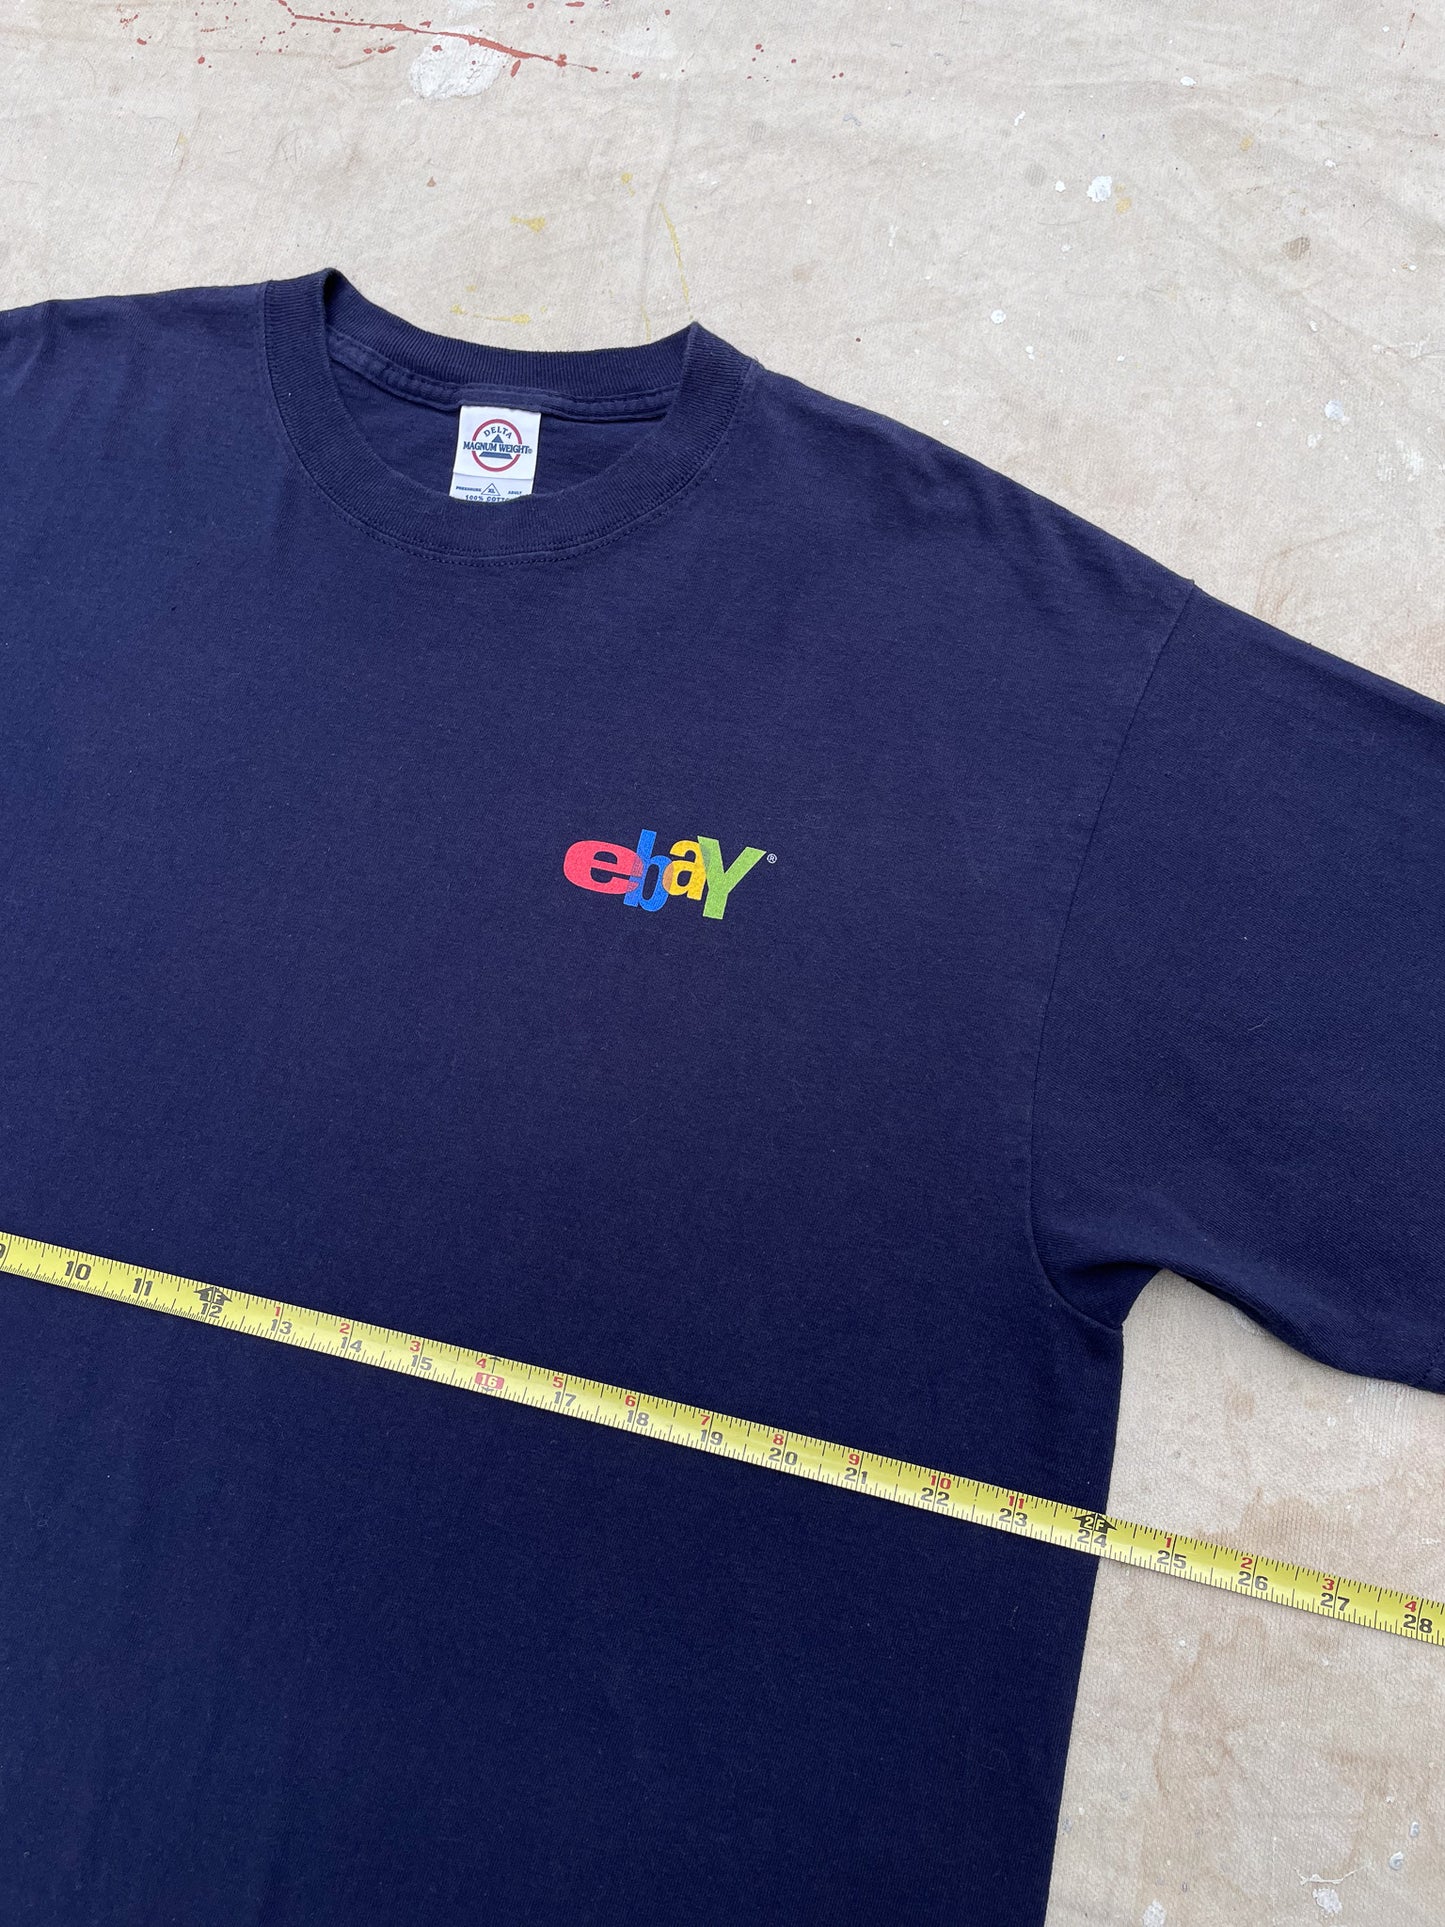 Ebay T-Shirt—[XL]